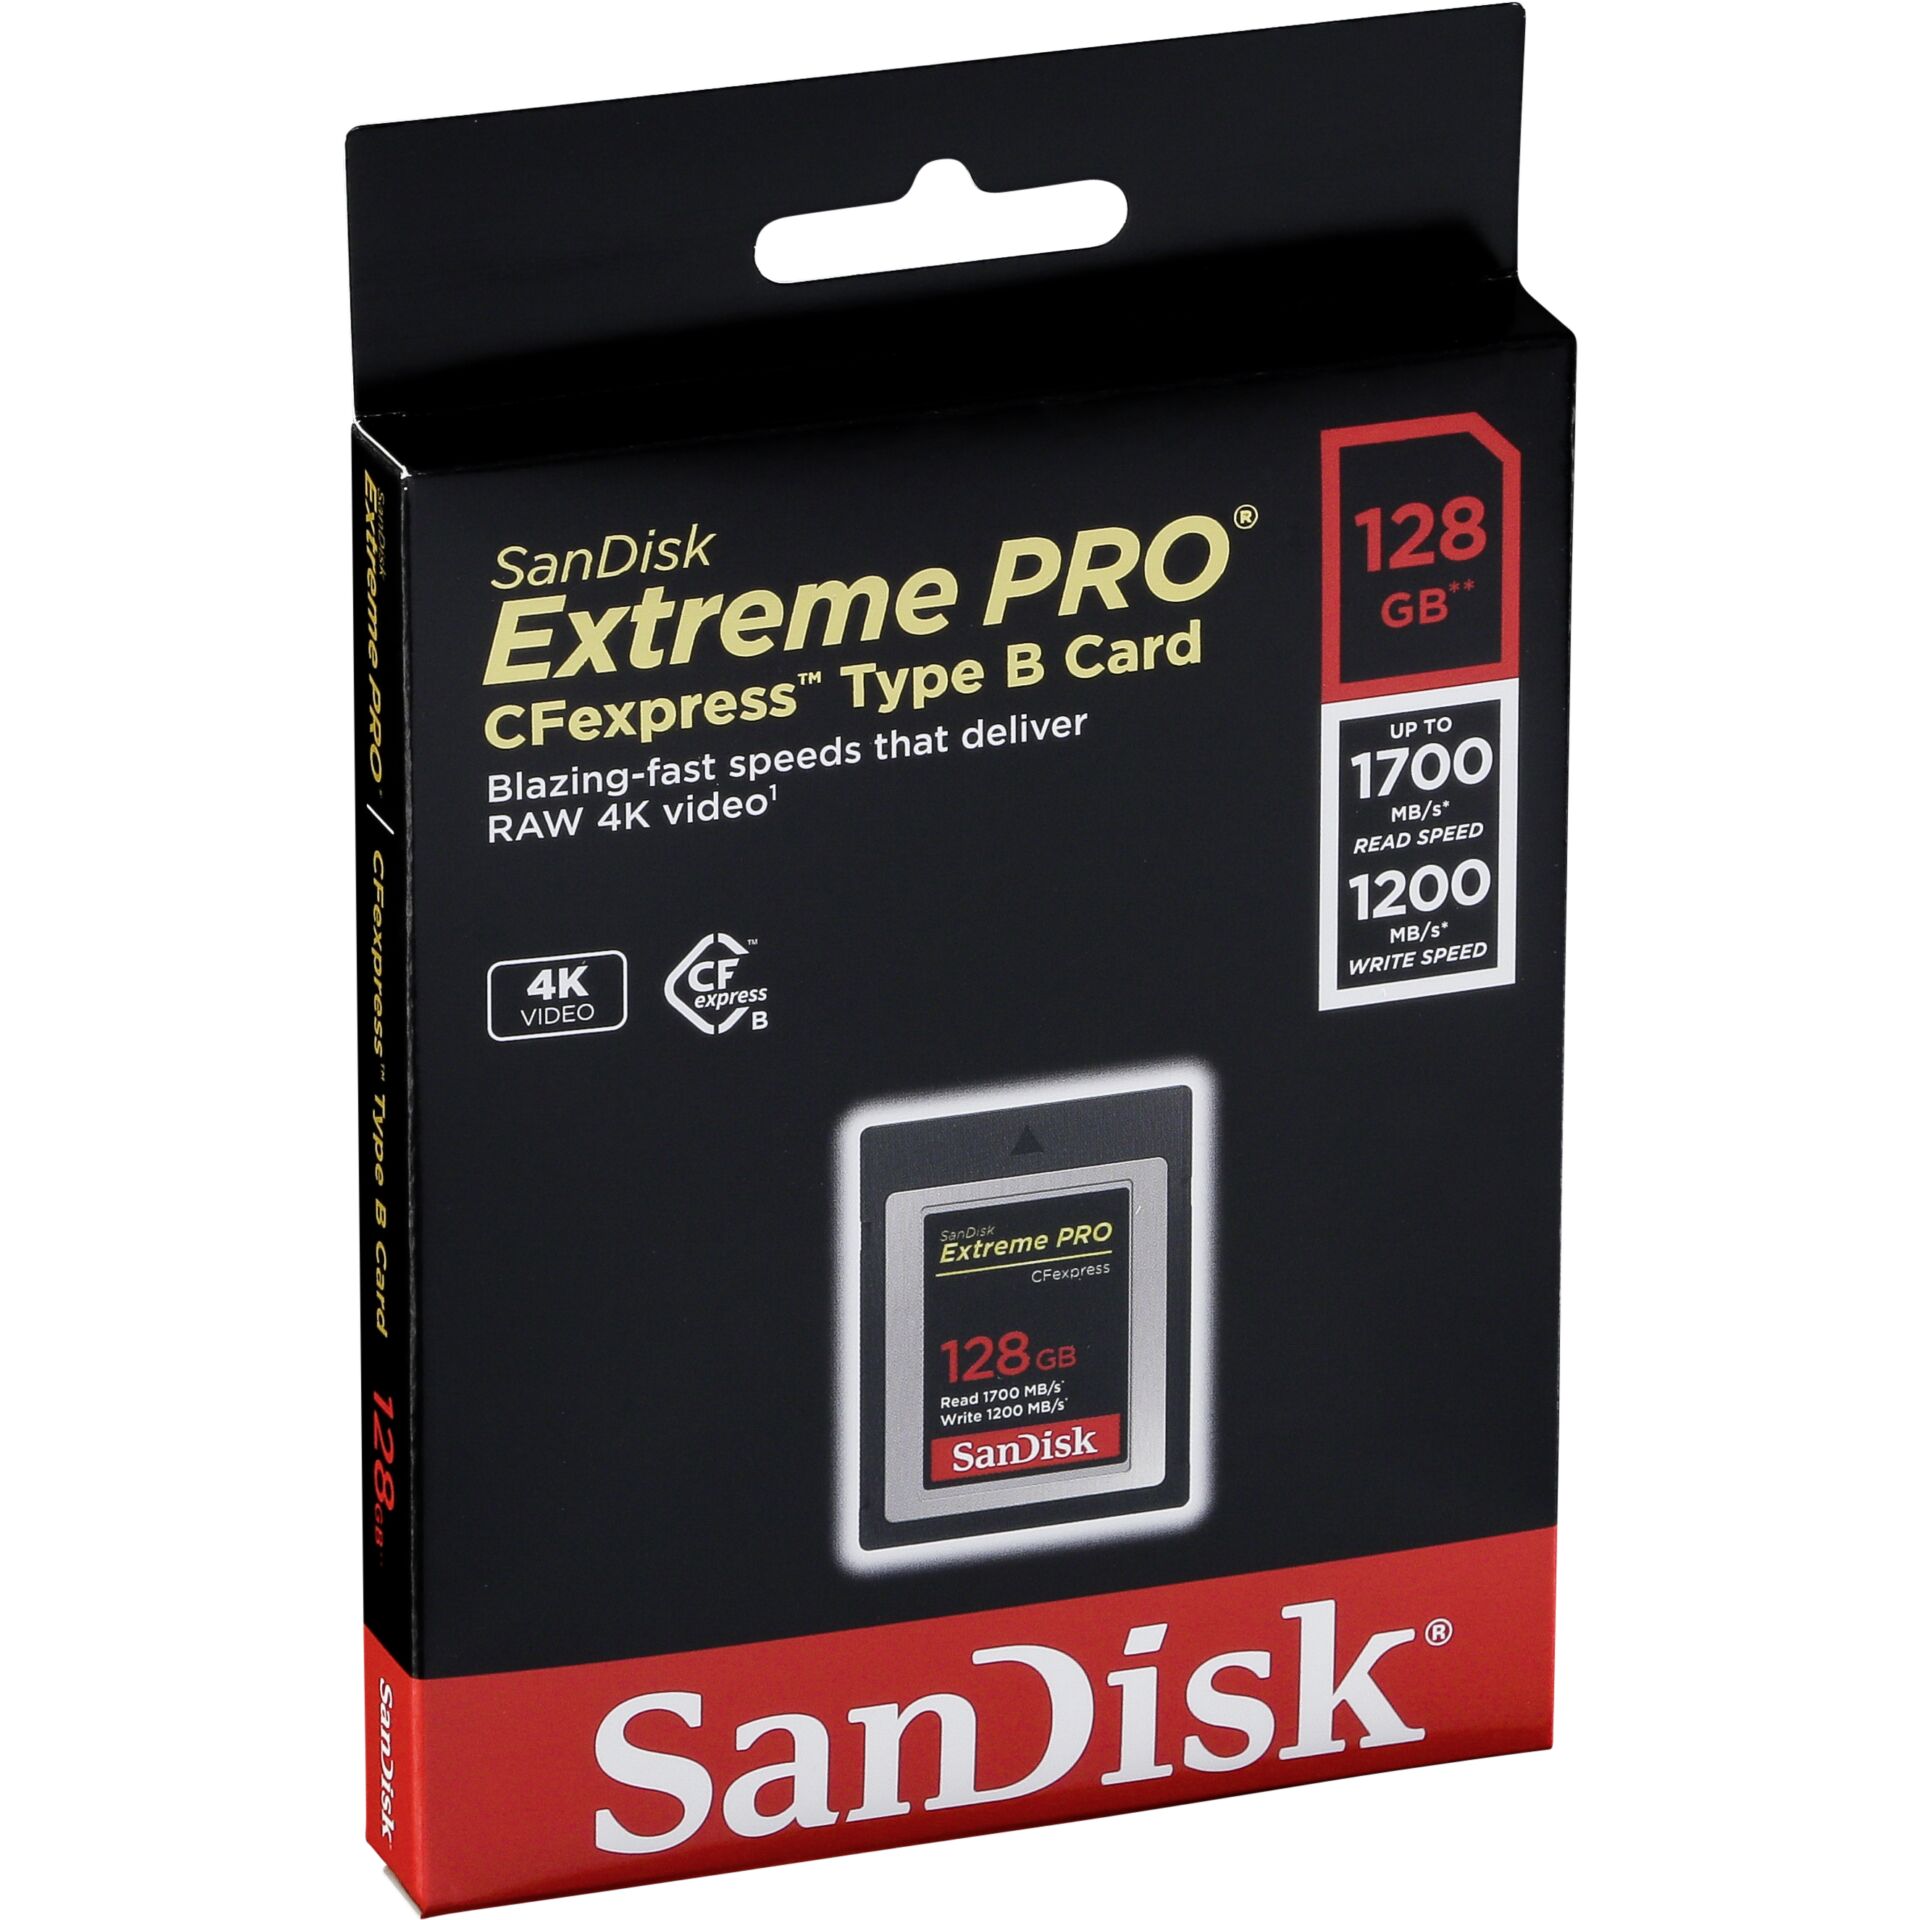 128 GB SanDisk Extreme PRO R1700/W1200 CFexpress Type B Speicherkarte, lesen: 1700MB/s, schreiben: 1200MB/s